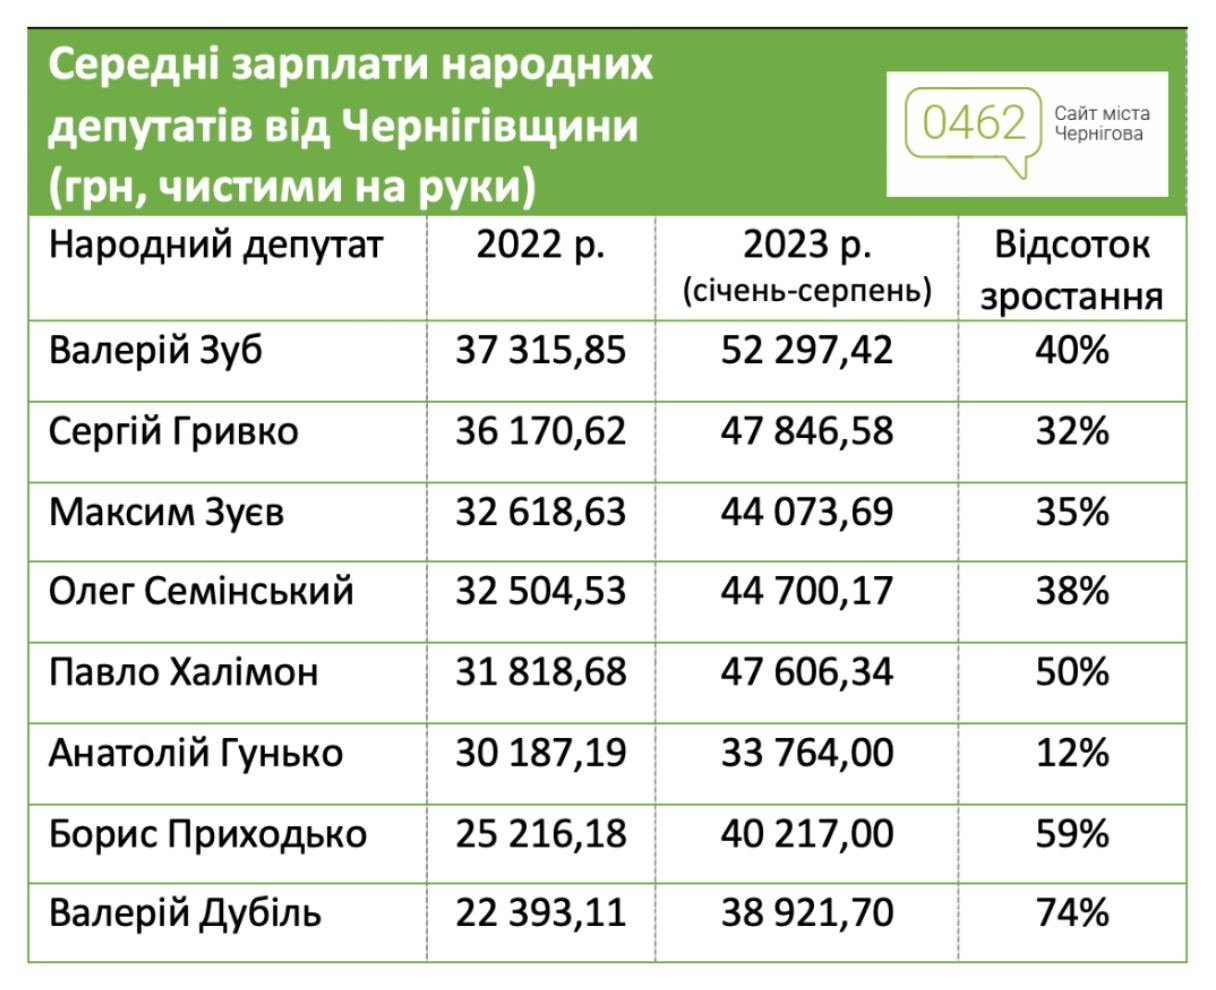 Зростання зарплат депутатів у 2022/23 роках